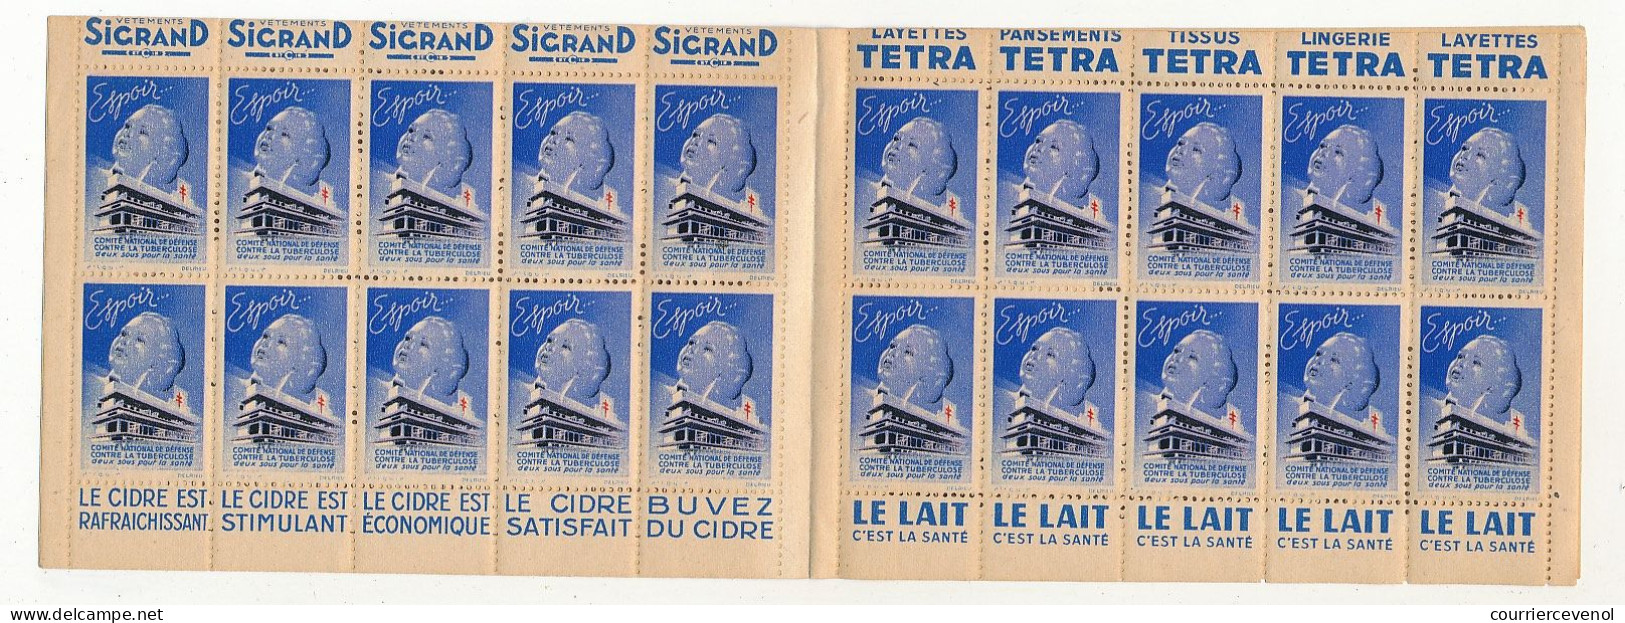 Carnet Anti-tuberculeux 1939 - 13ème Campagne - 2 Fr - 20 Timbres à 10c  - Pubs Sigrand, Cidre, Tissus Tetra, Lait... - Blocs & Carnets